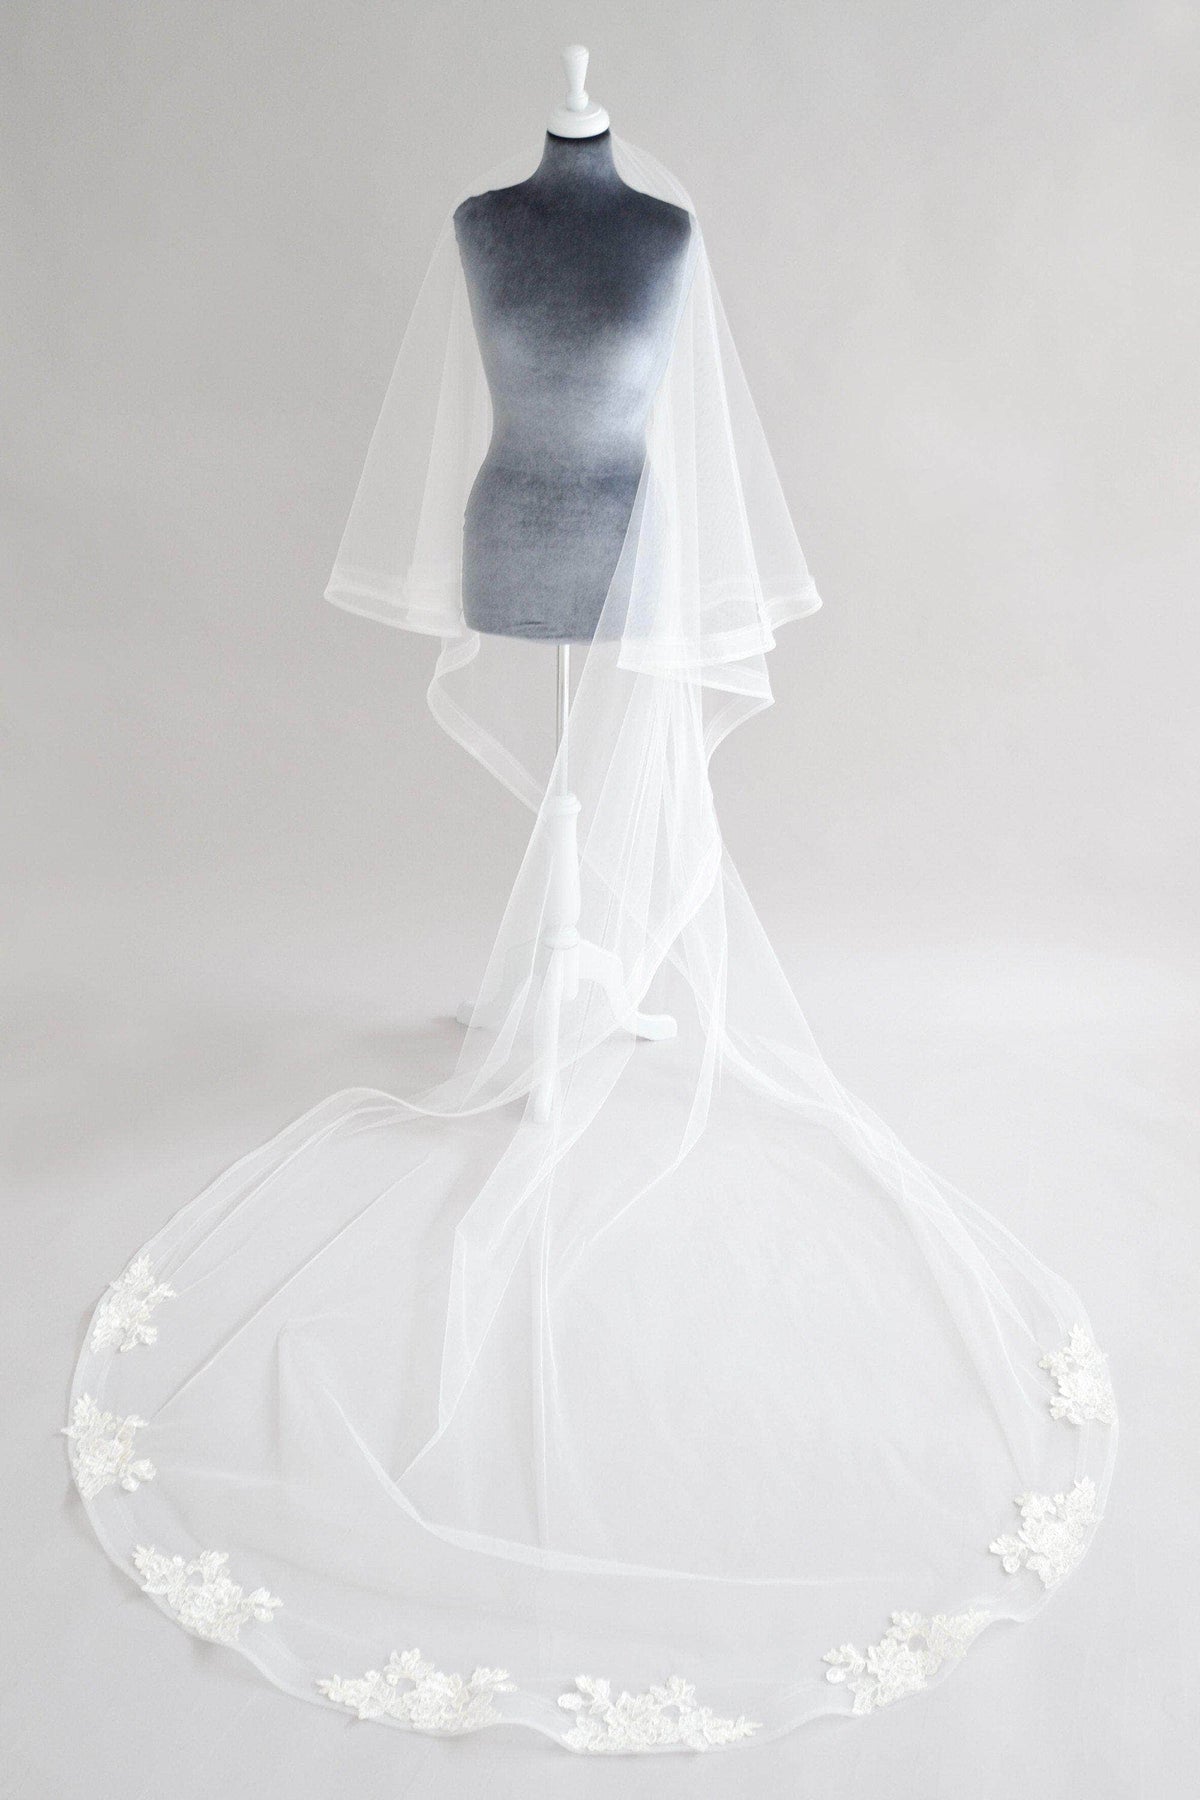 Custom Veil &#39;Custom veil- deposit for bespoke veil&#39;- £50 Custom wedding veil, the bespoke veil option